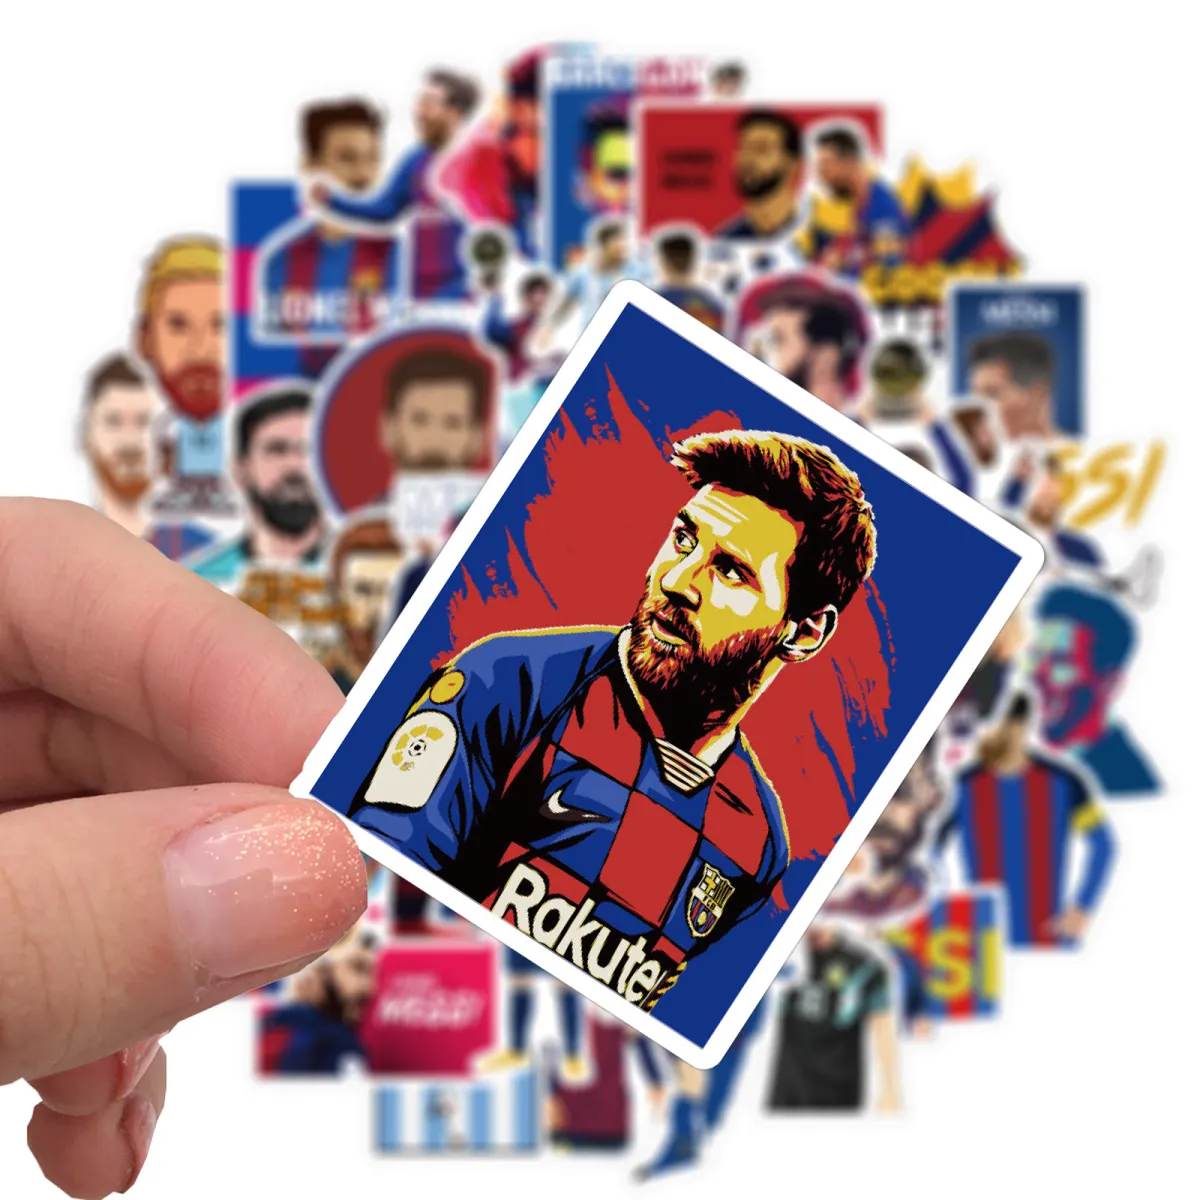 Trọn Bộ Hình Nền Cầu Thủ Messi Trên Máy Tính Siêu đẹp Cho Fan Mê Bóng đá